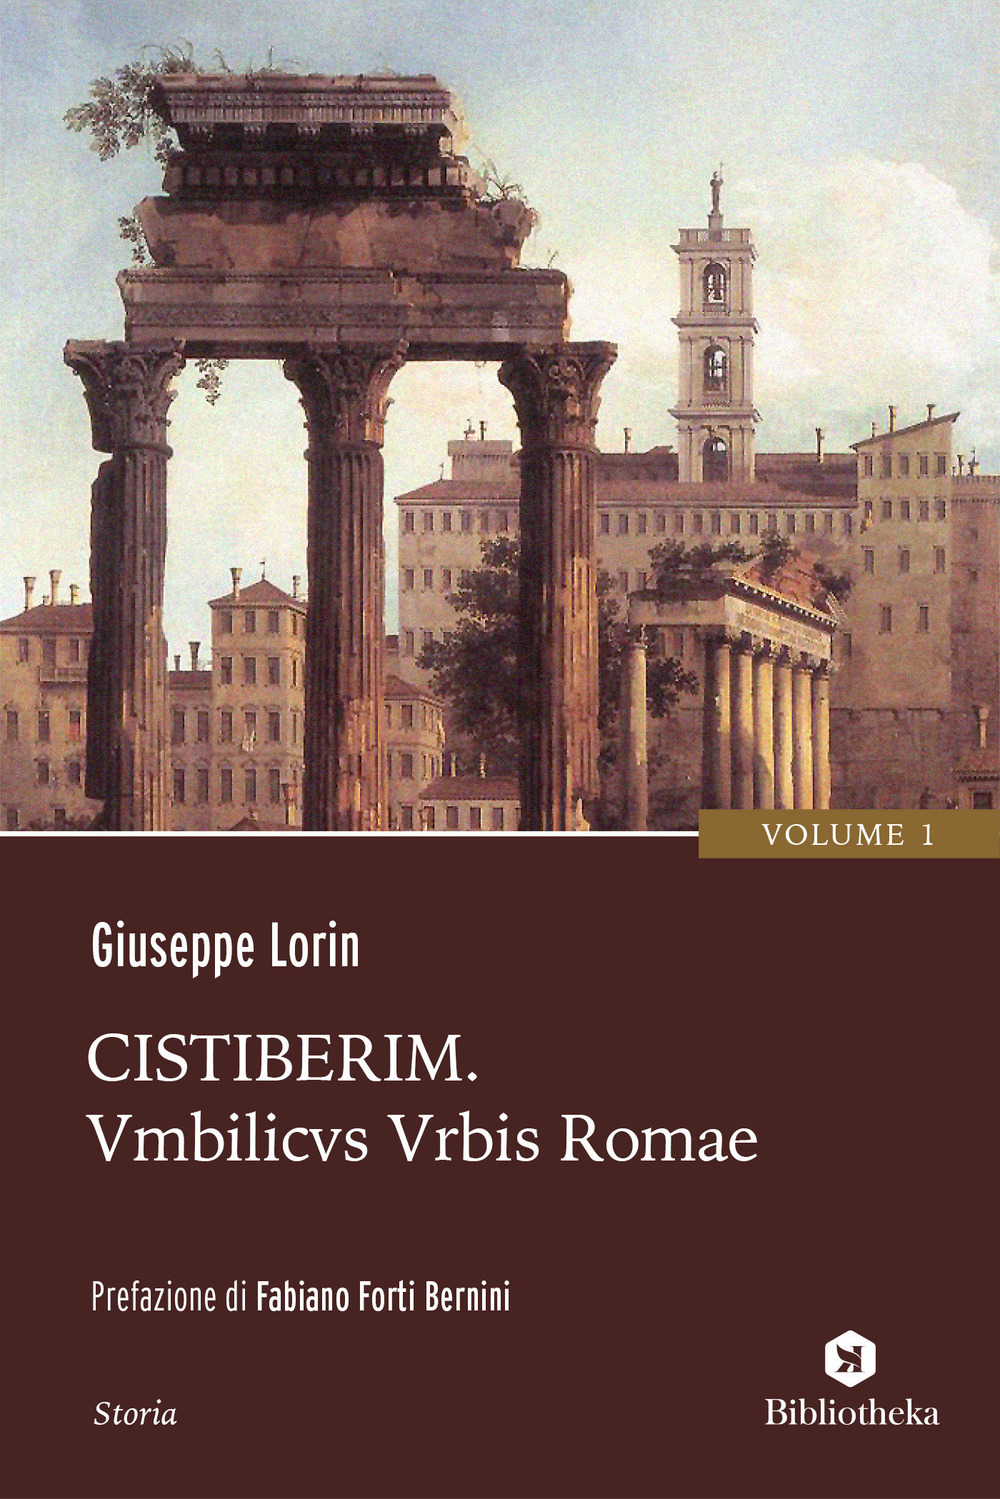 Cistiberim. Vol. 1: Umbilicus urbis Romae